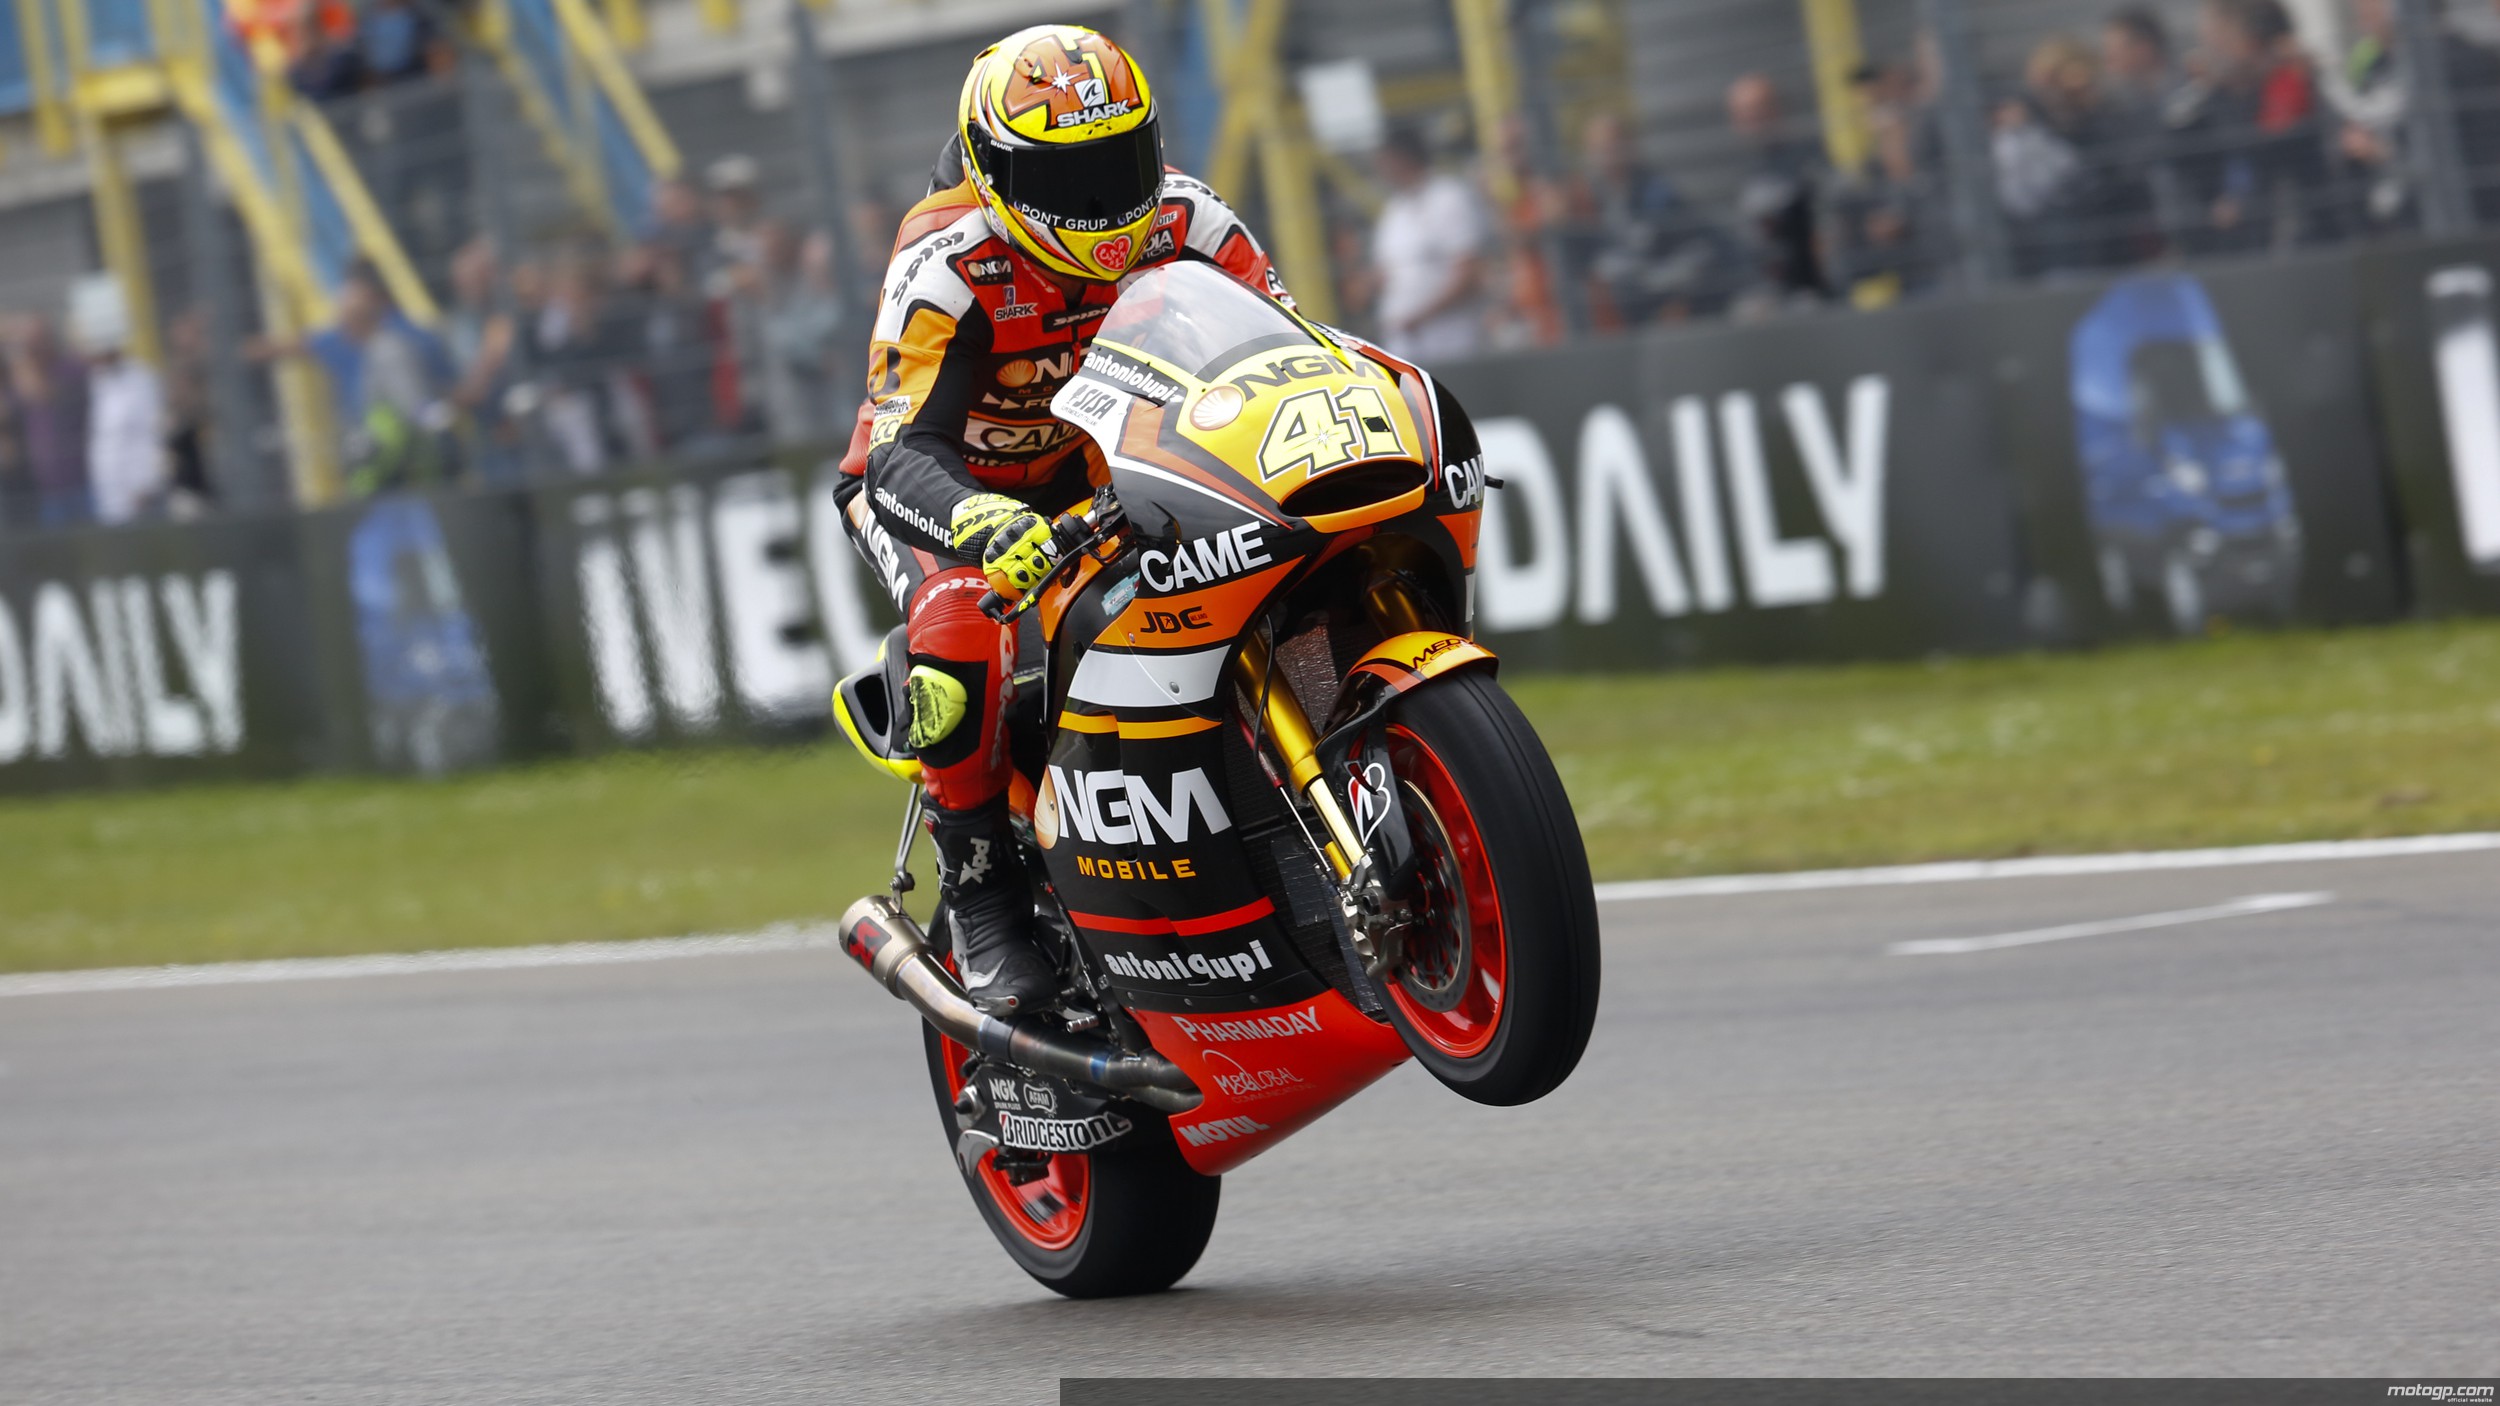 Espargaró conquista primeira pole da Carreira. Foto: MotoGP